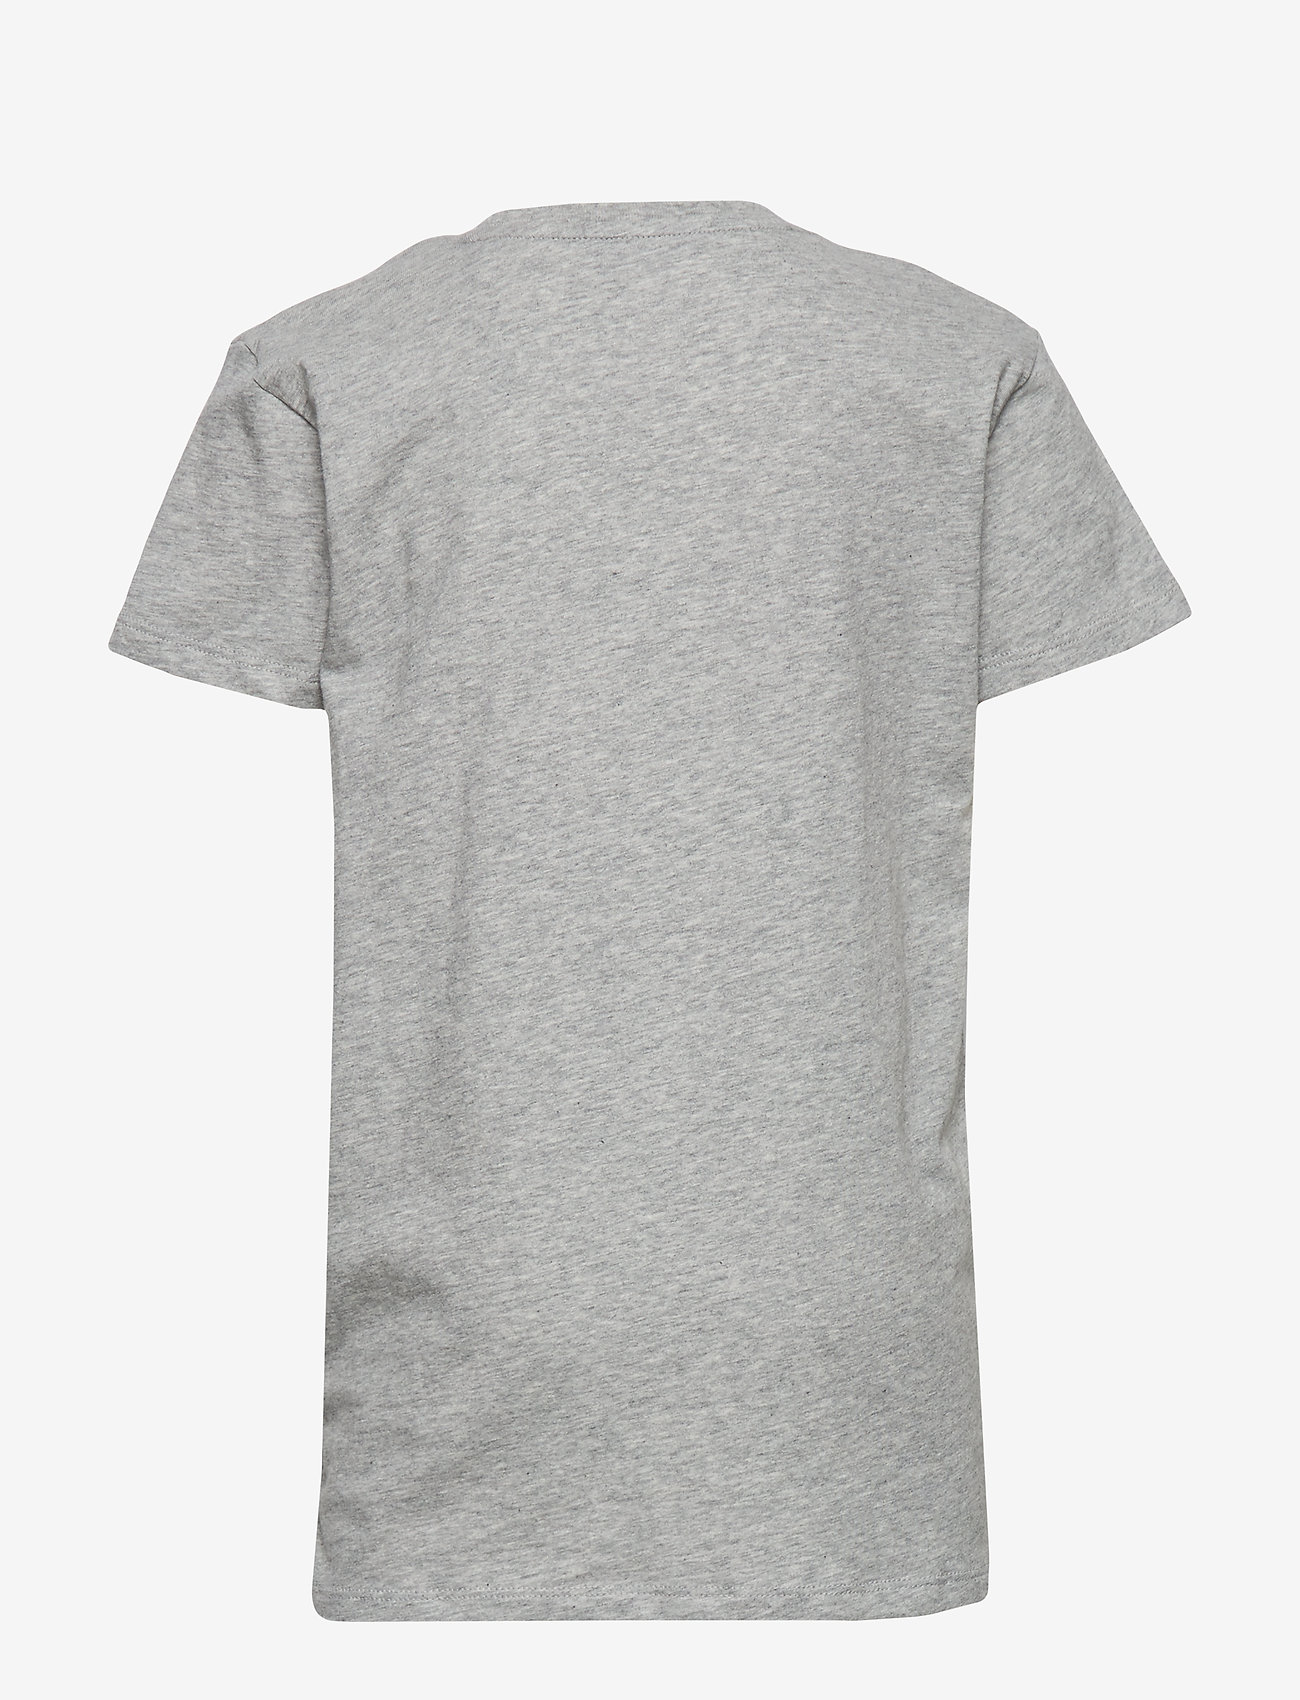 GANT - THE ORIGINAL SS T-SHIRT - t-shirt uni à manches courtes - light grey melange - 1